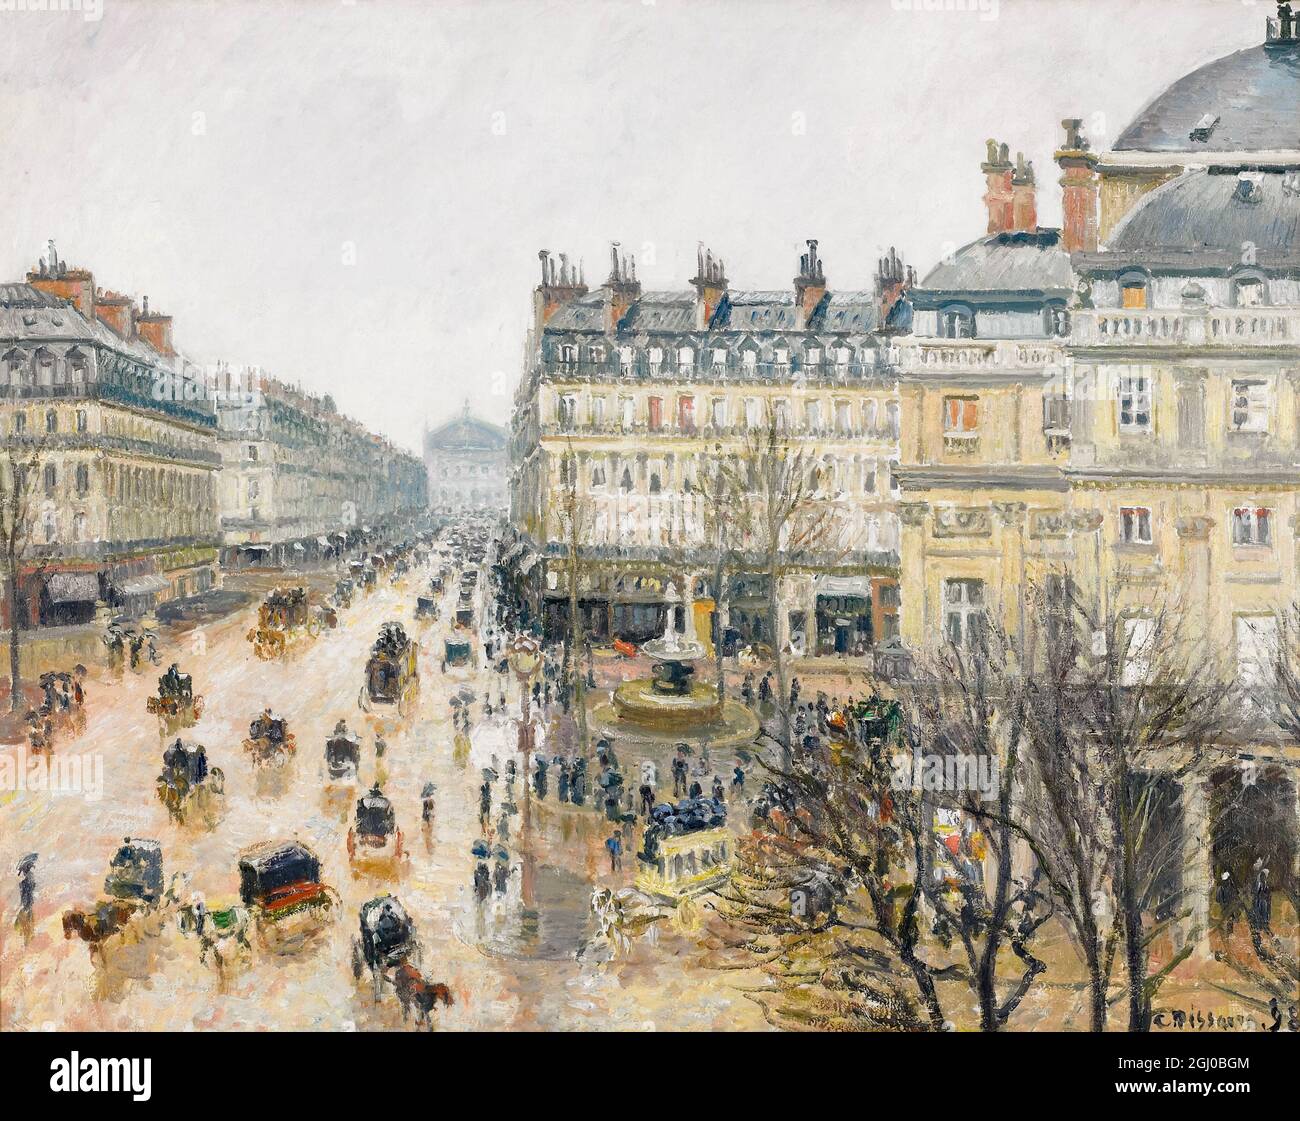 La Place du Théâtre Français, Paris, Rain, painting by Camille Pissarro, 1898 Stock Photo